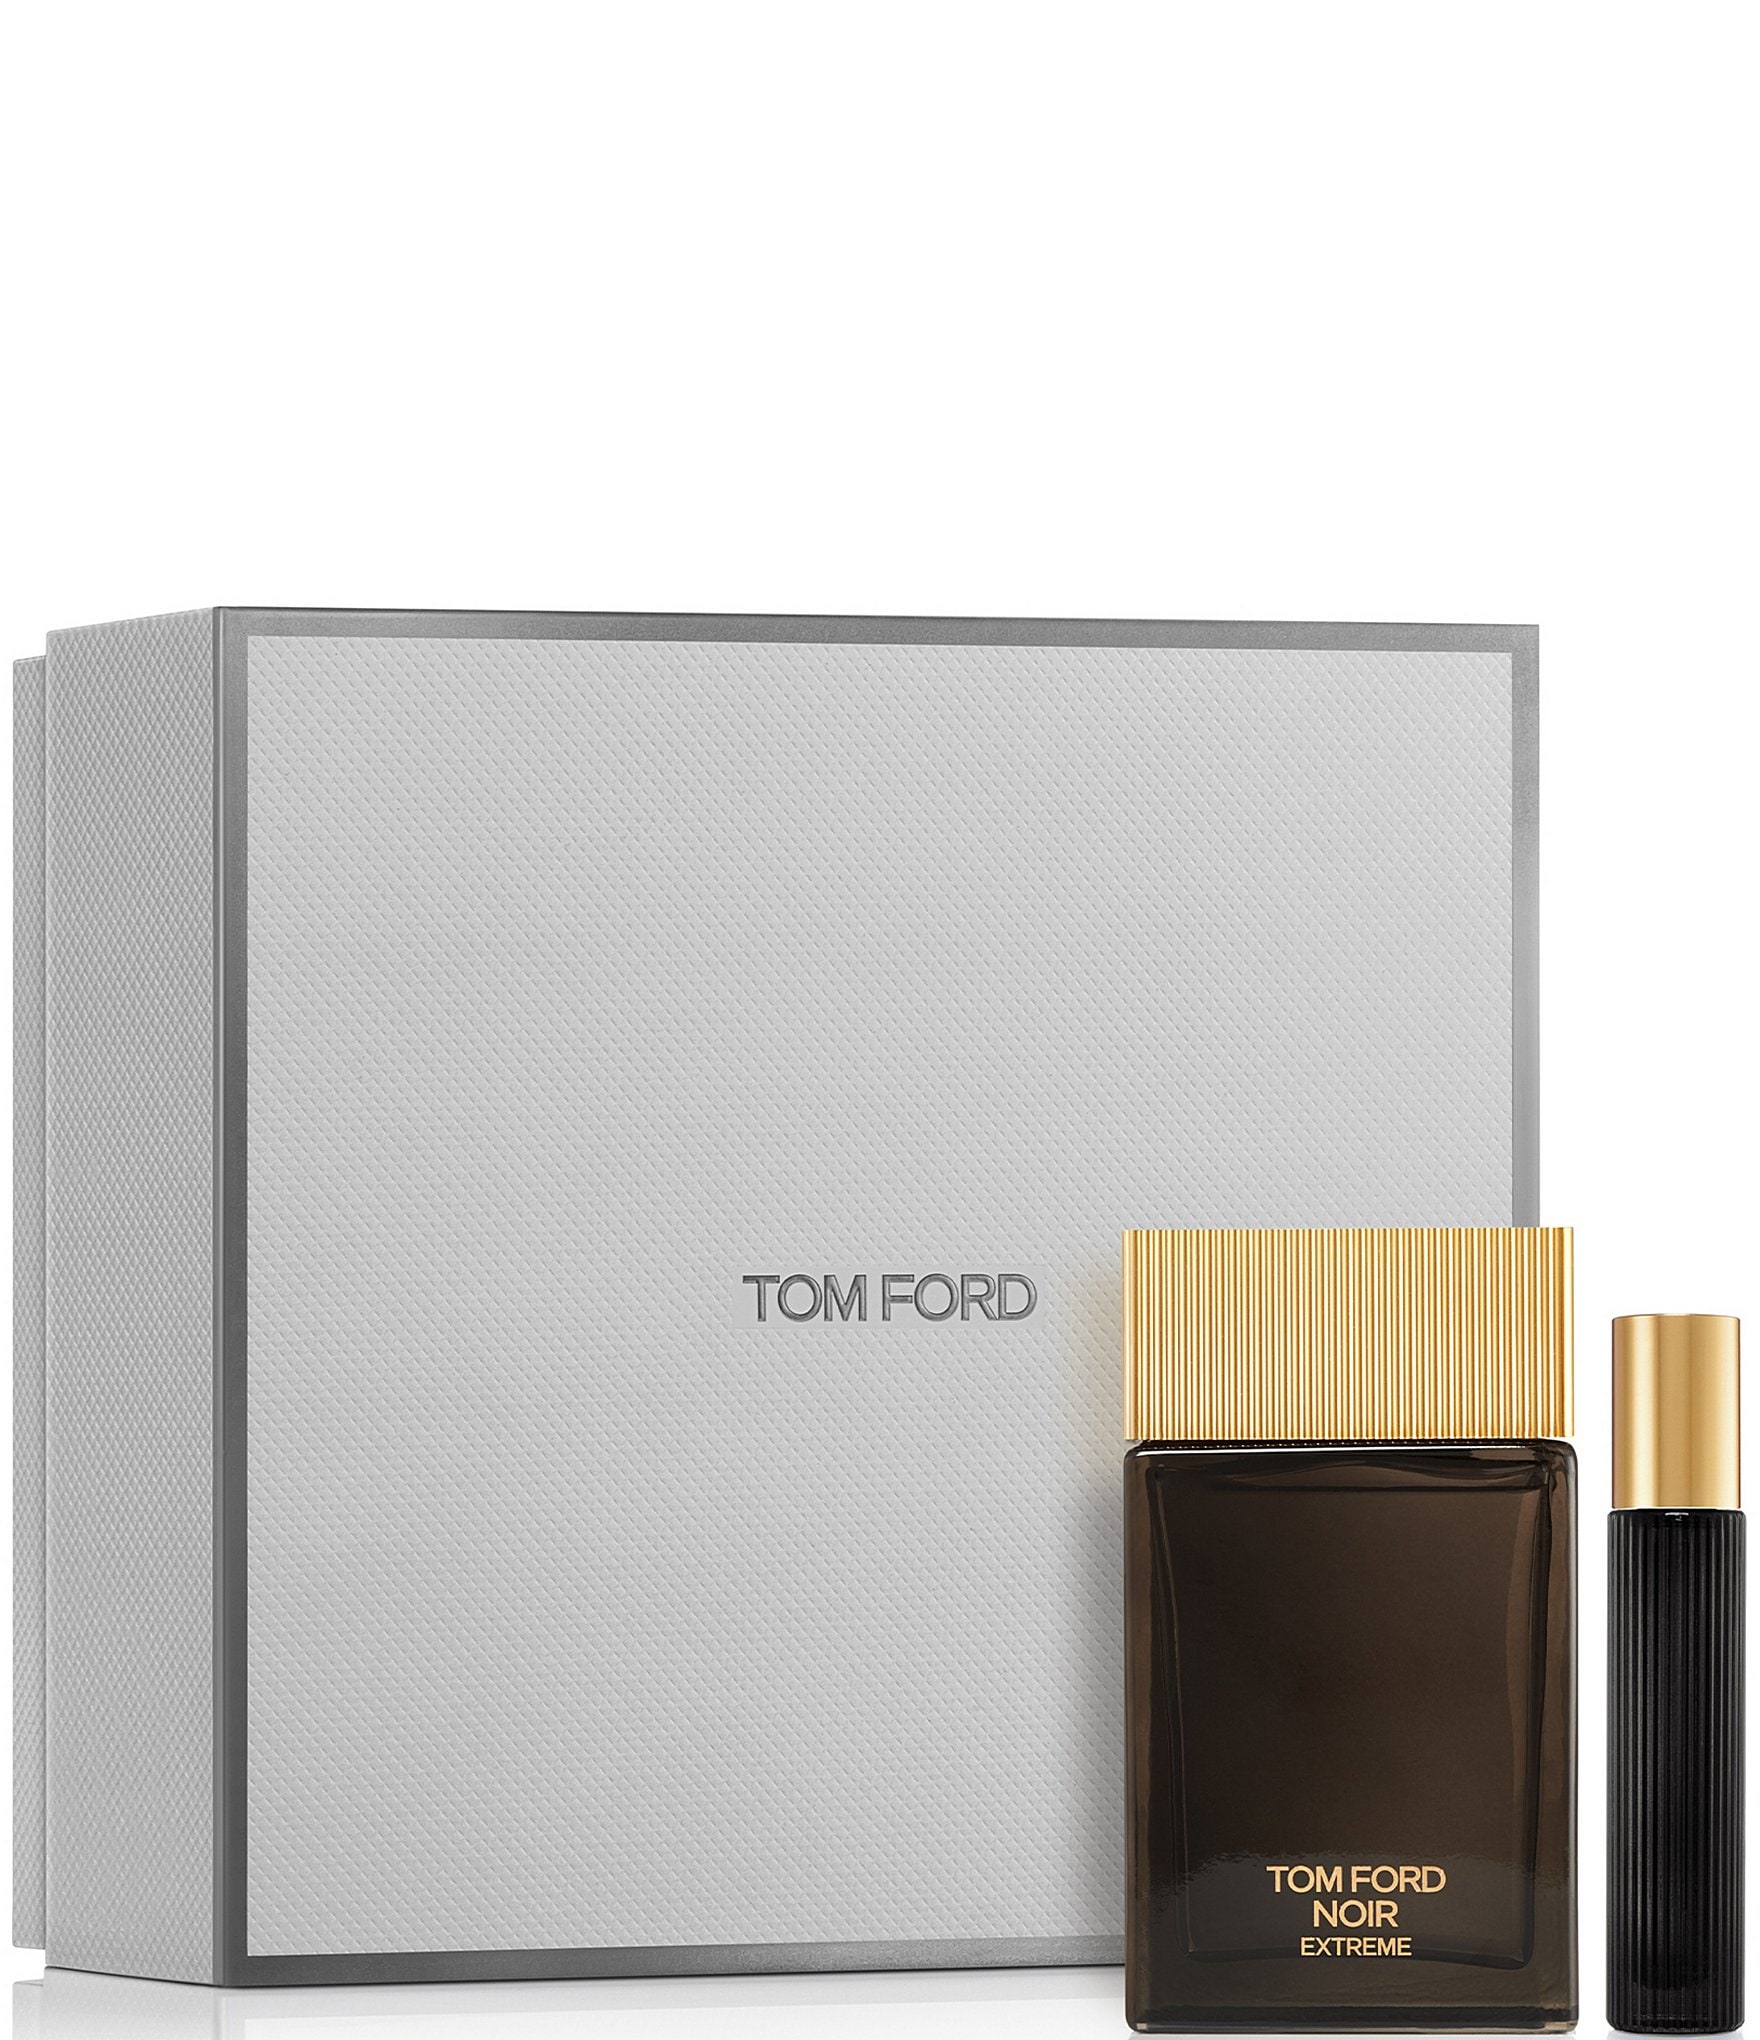 TOM FORD Noir Extreme Eau de Parfum Cologne Gift Set | Dillard's